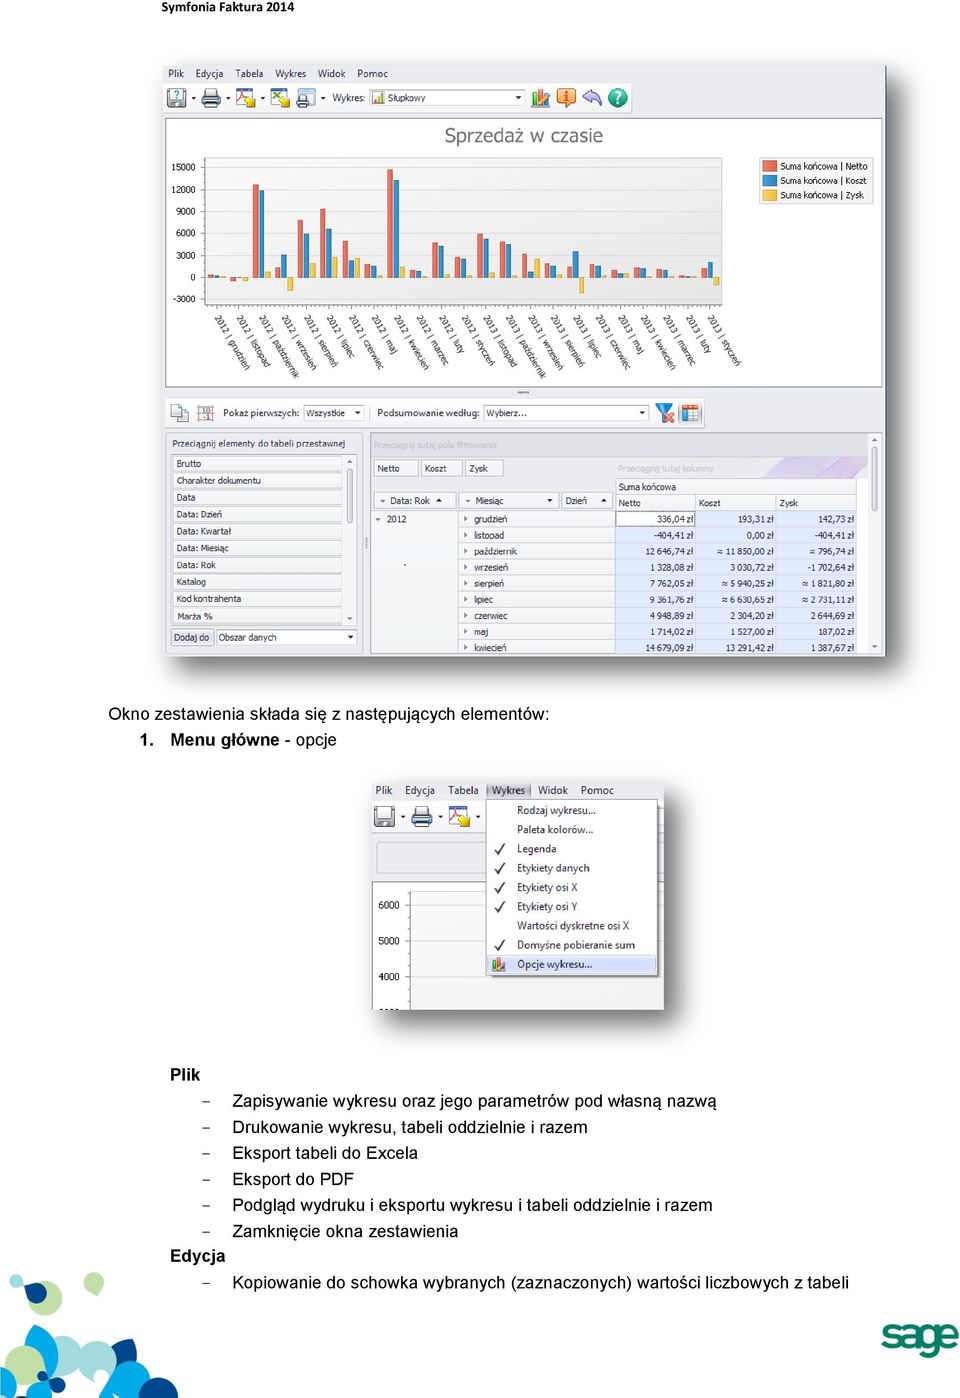 wykresu, tabeli oddzielnie i razem Eksport tabeli do Excela Eksport do PDF Podgląd wydruku i